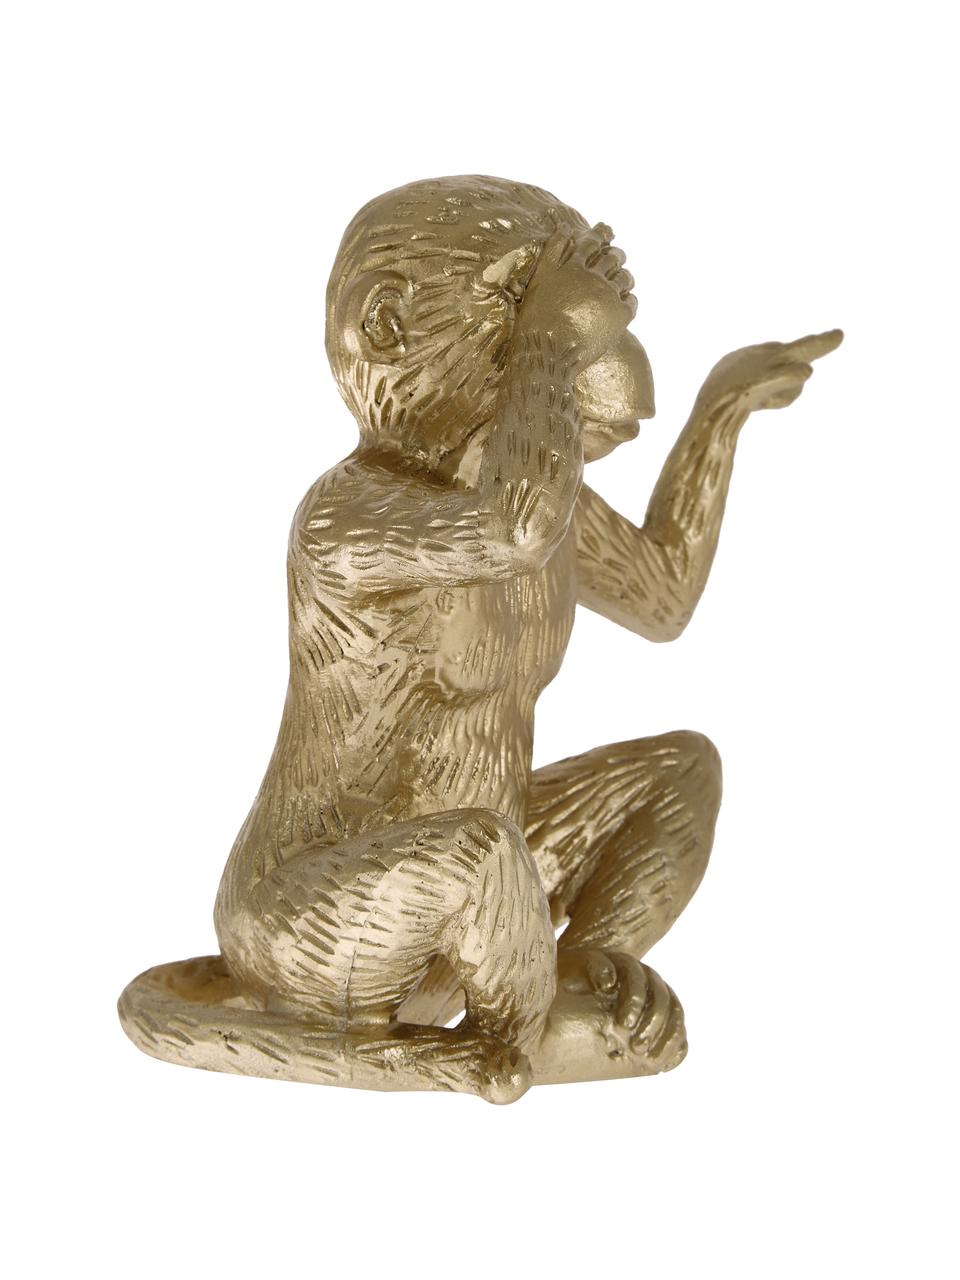 Objet décoratif Monkey, Polyrésine, Couleur dorée, larg. 15 x haut. 15 cm